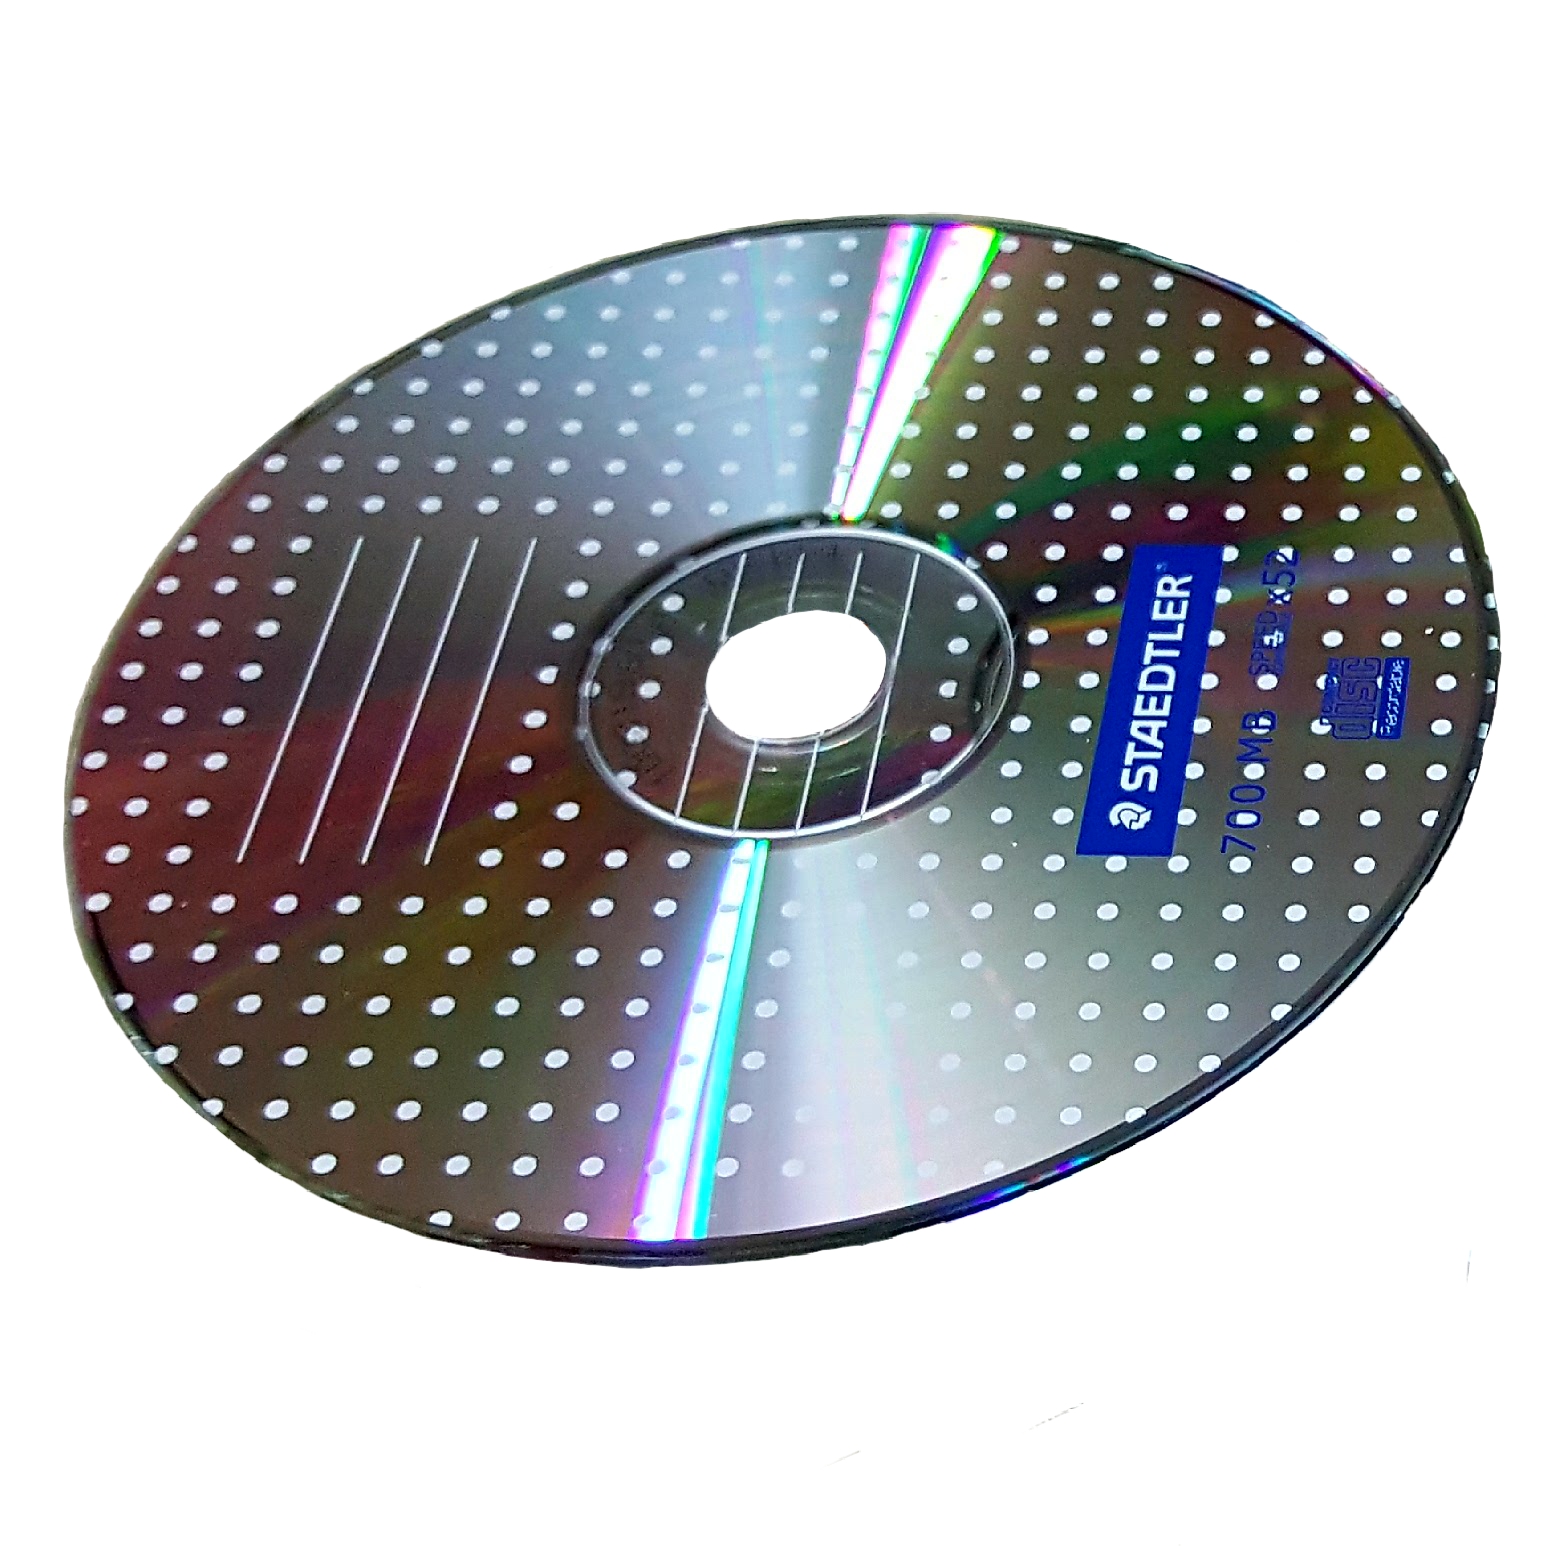 سی دی خام مدل CD-R 700MB بسته 5 عددی                     غیر اصل